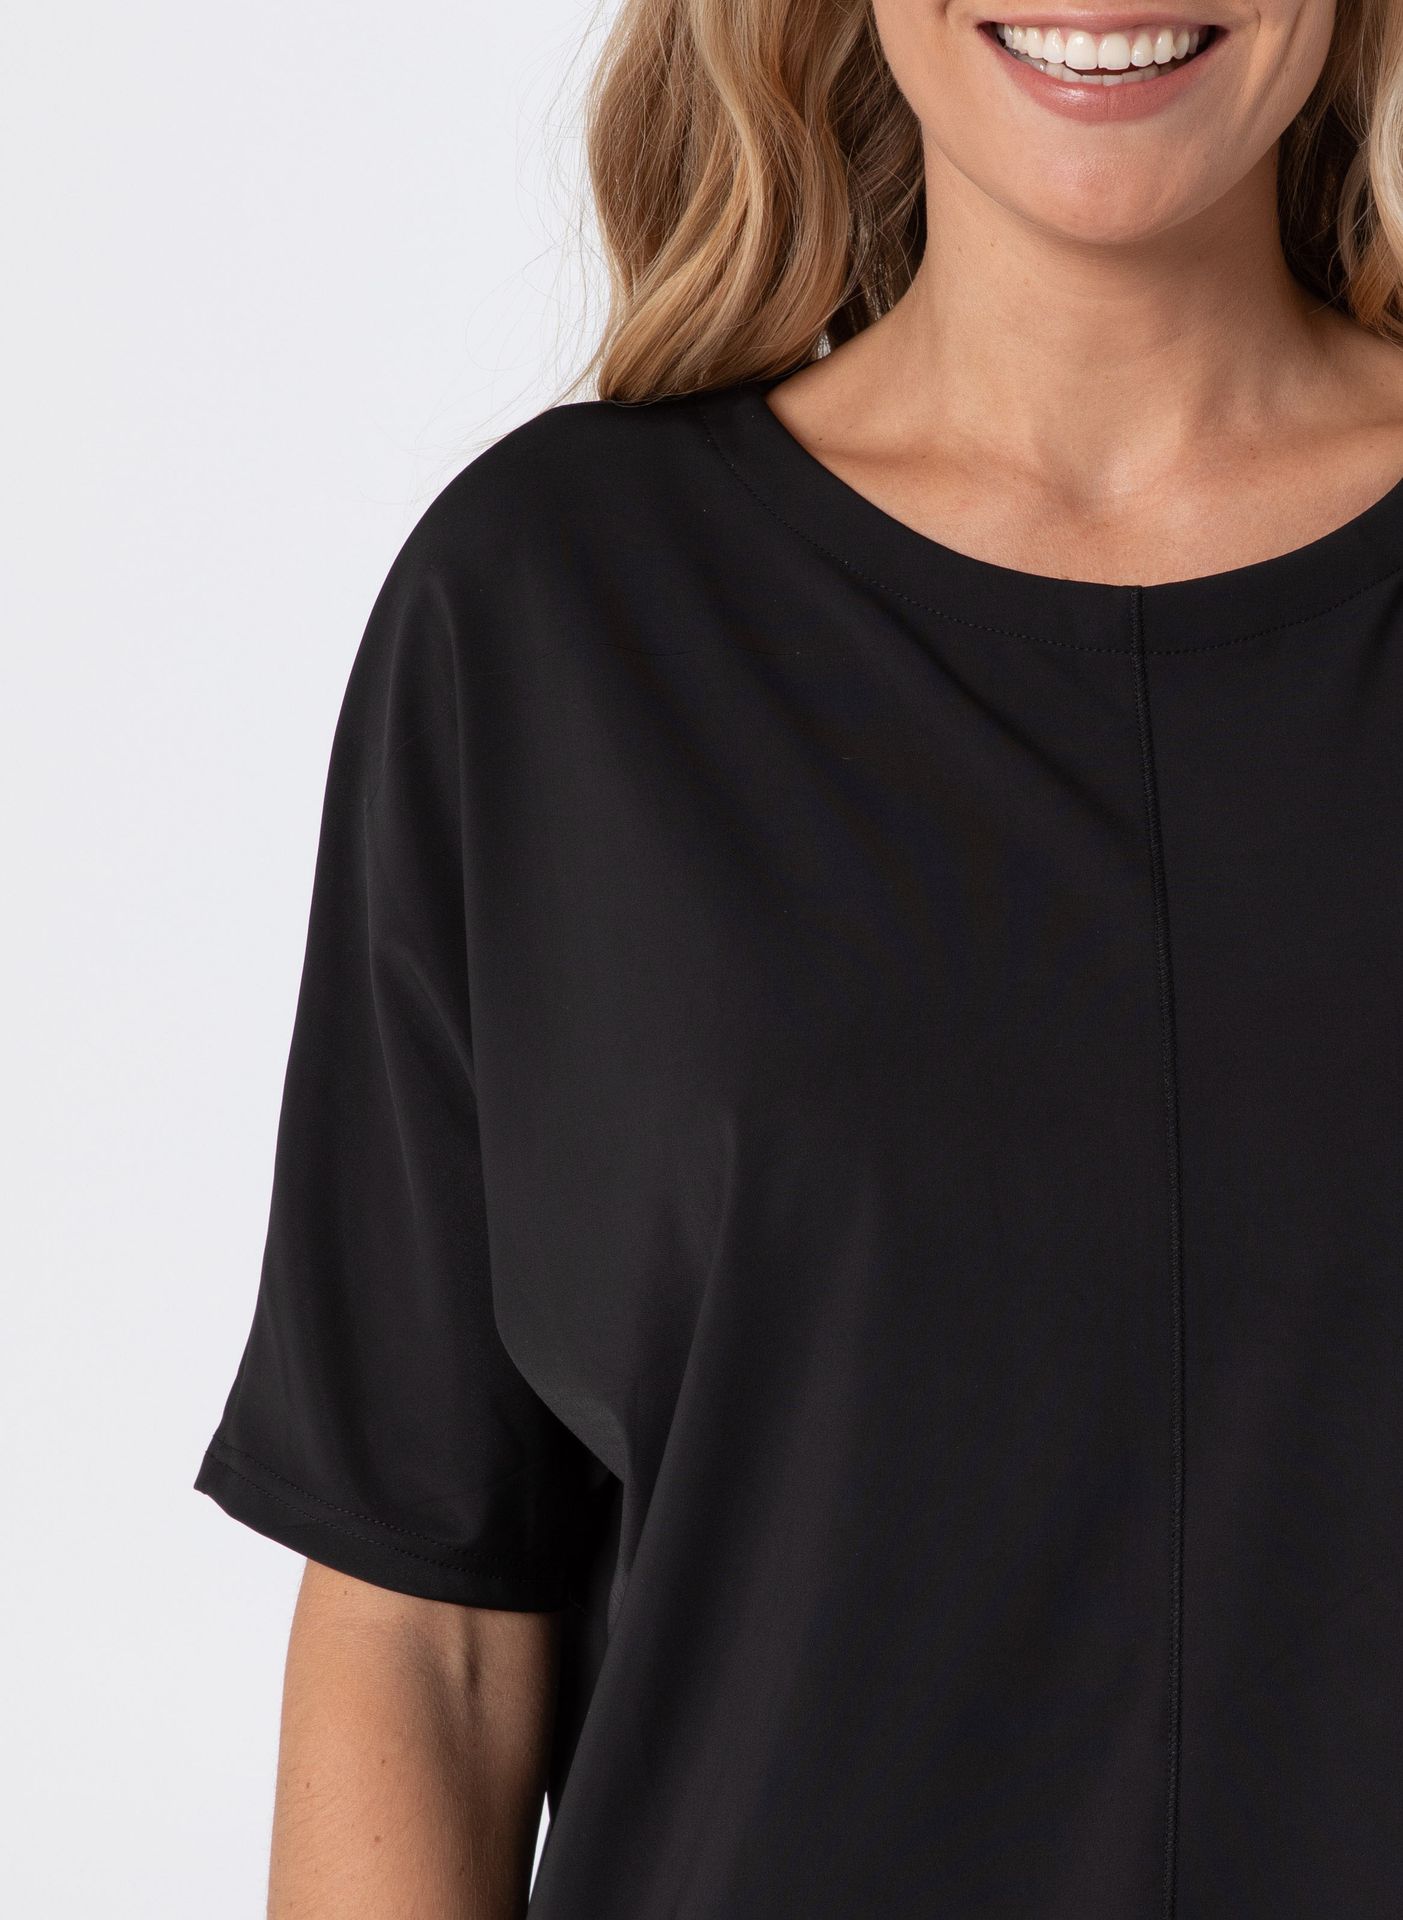 Norah Shirt - Activewear black 211912-001